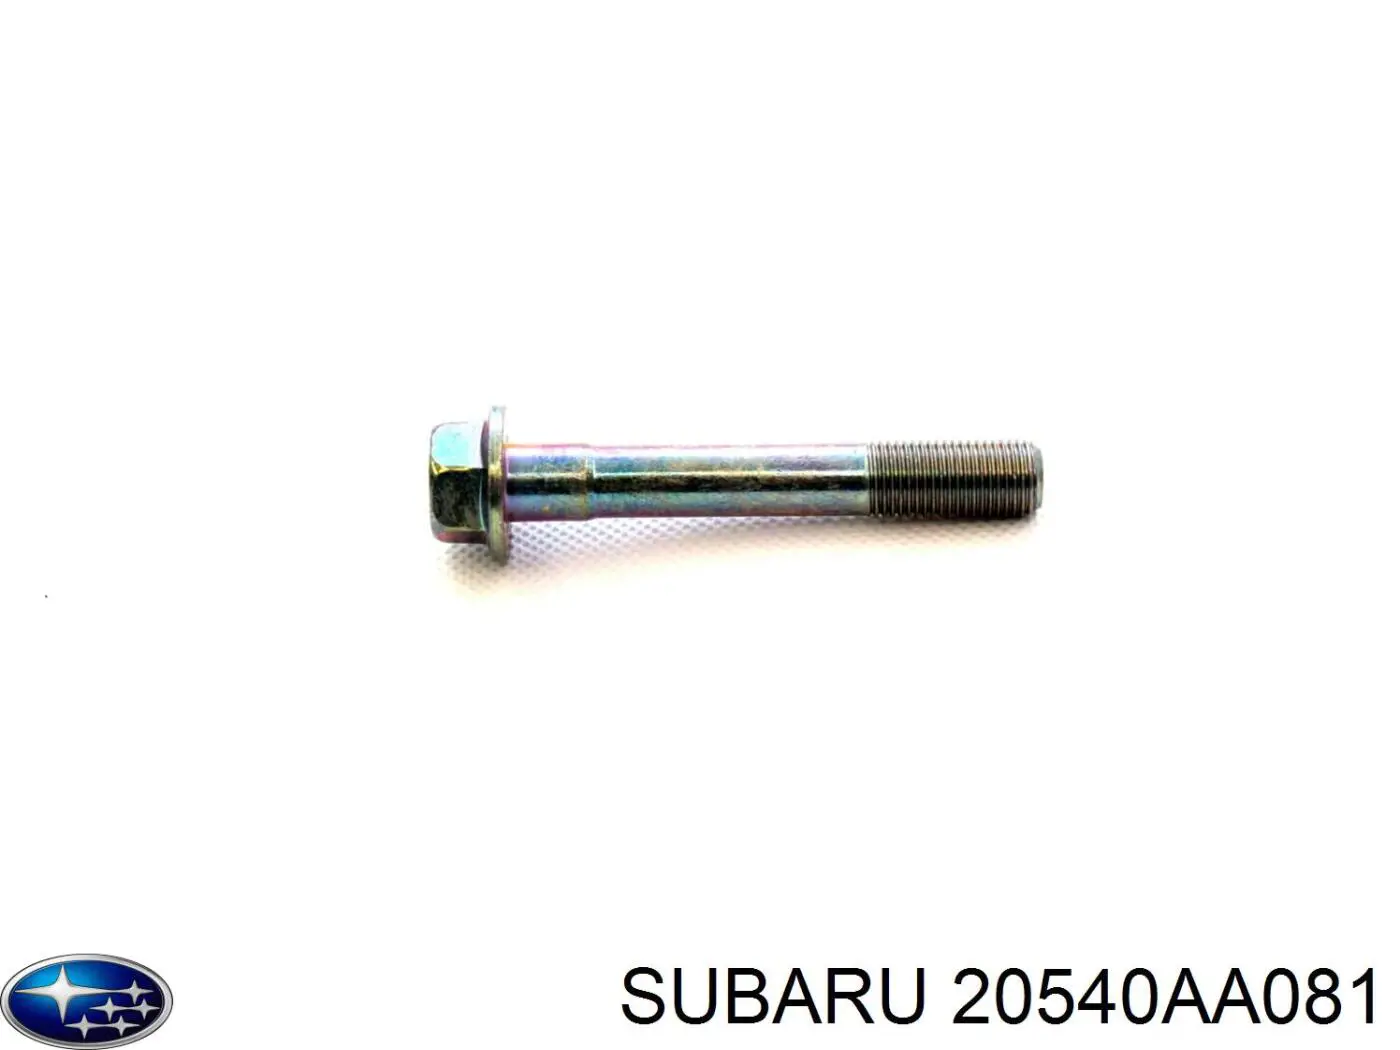 20540AA081 Subaru 